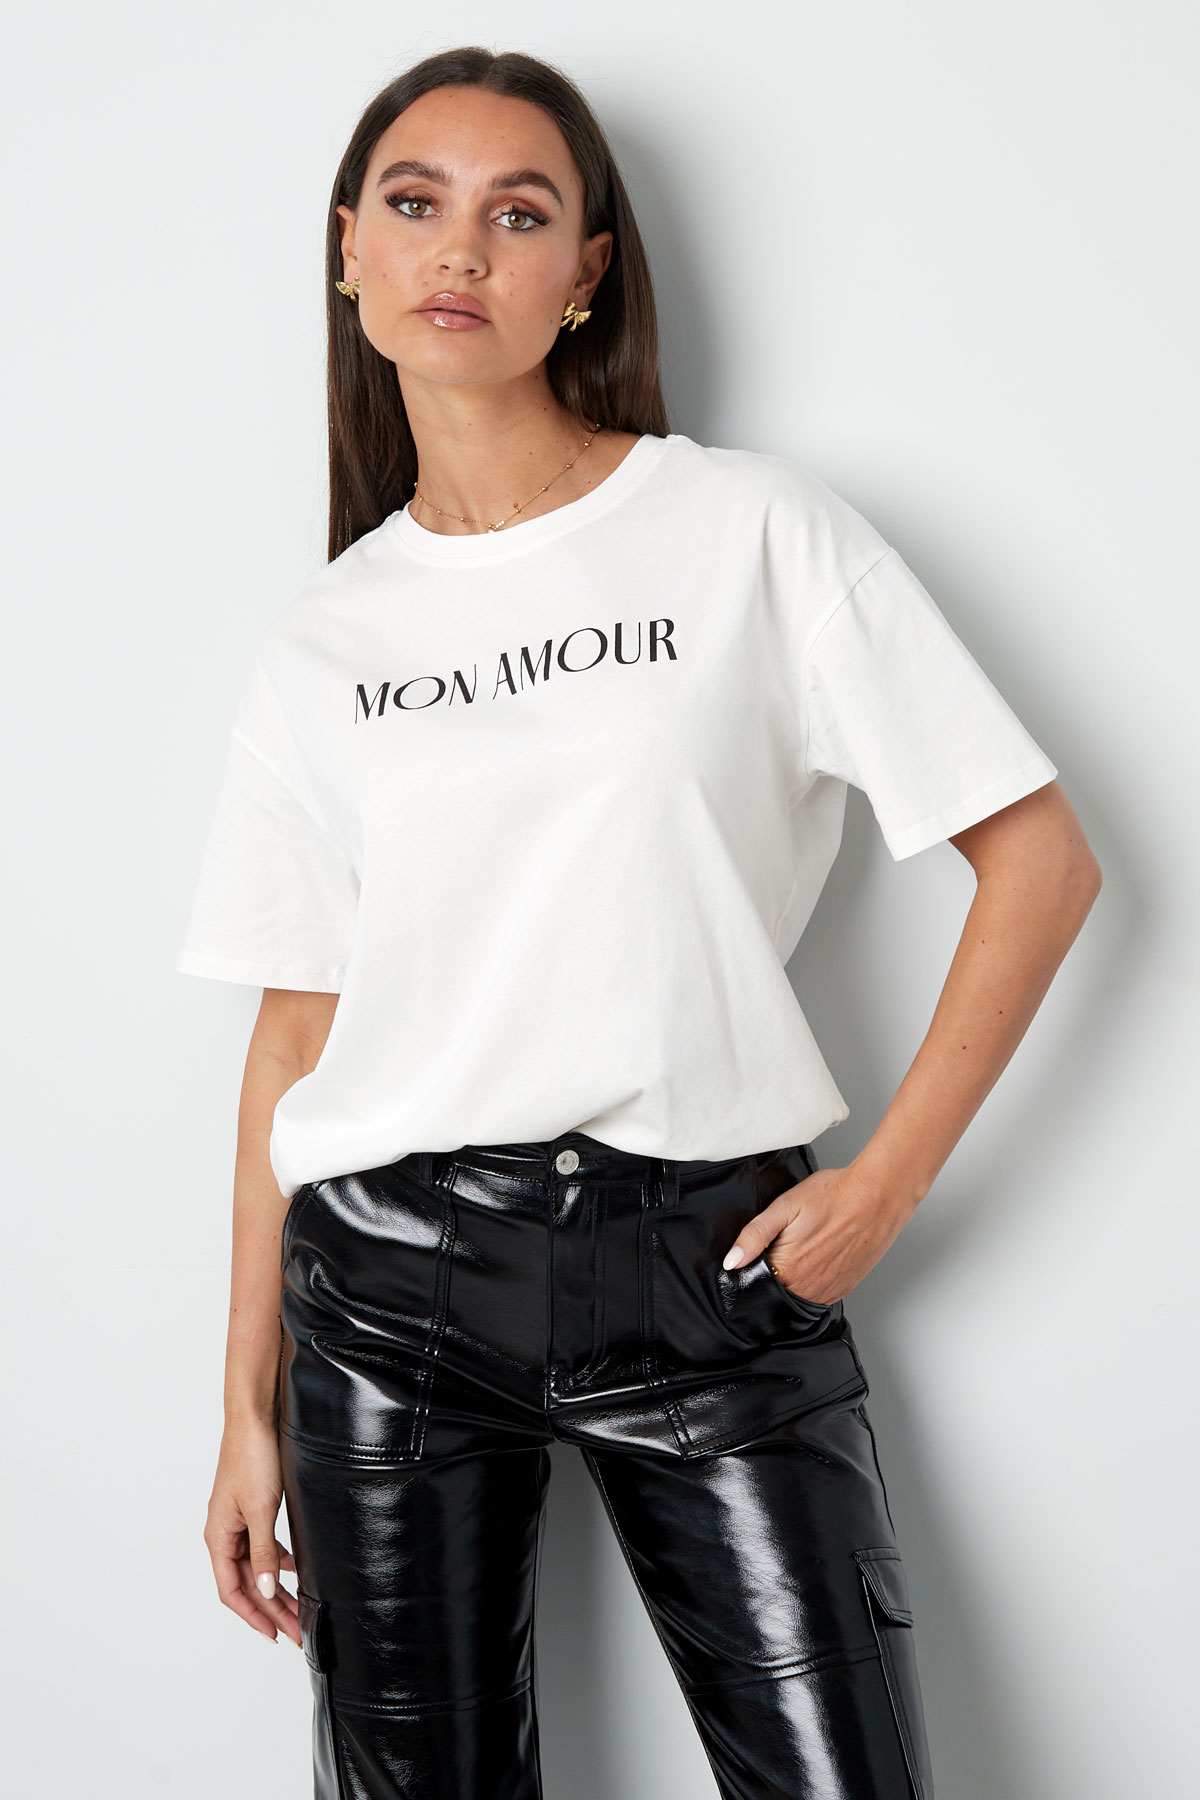 T-shirt mon amour - siyah beyaz h5 Resim6